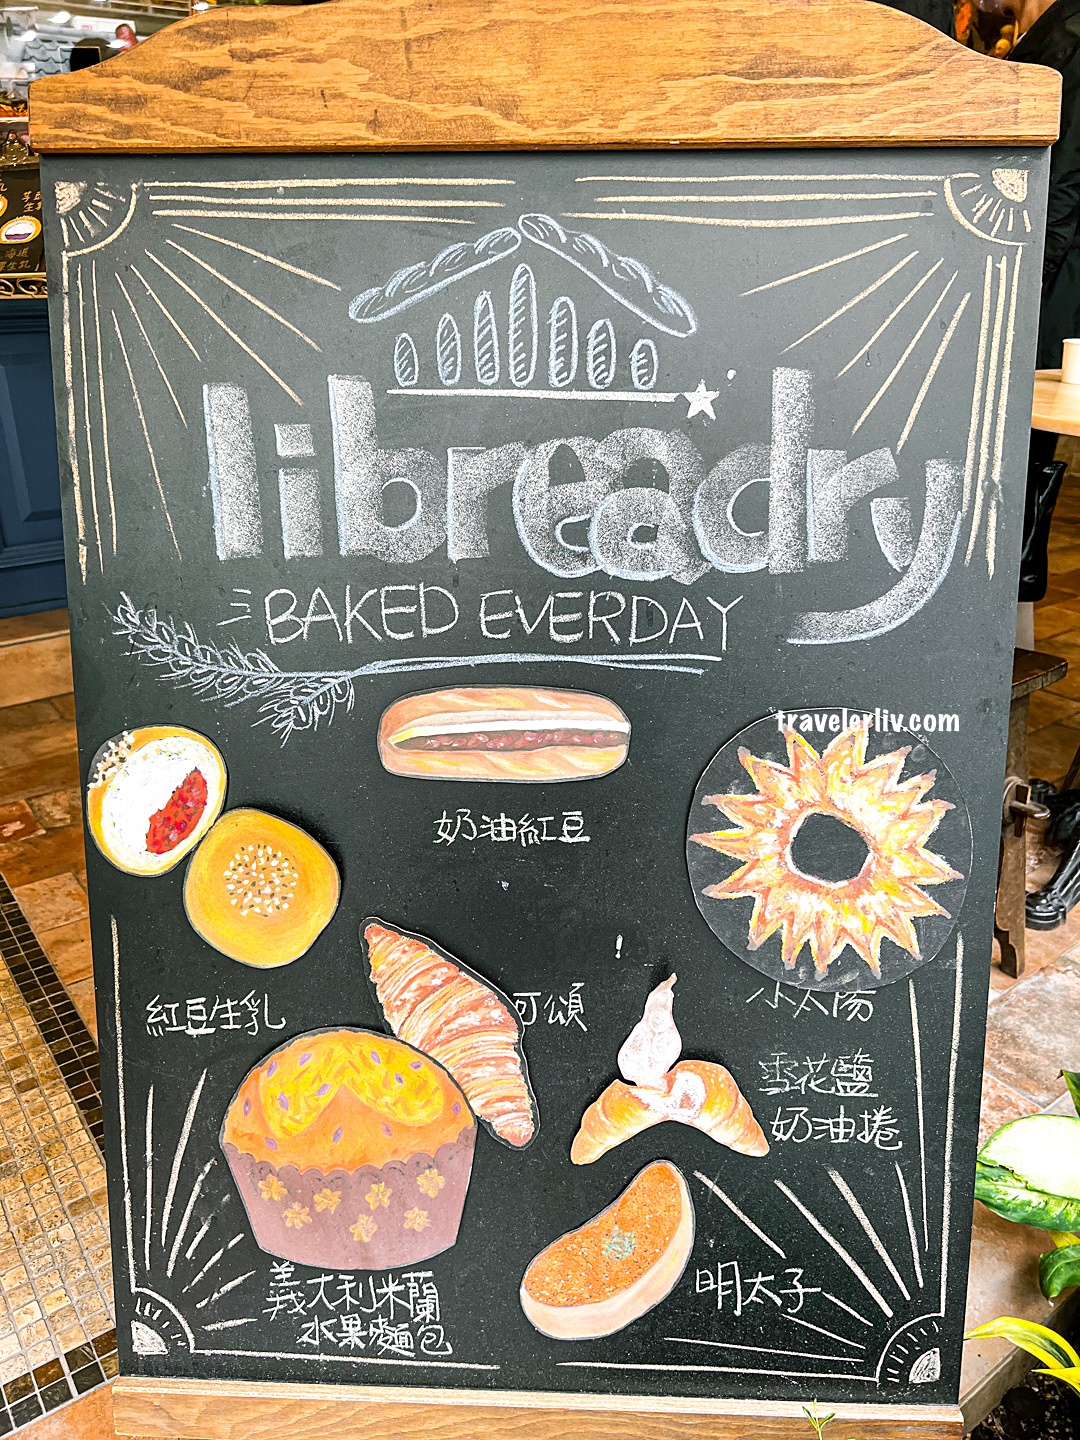 [台北美食] Libreadry 巢屋．東區人氣麵包，推薦明太子、肉桂捲跟義式蛋塔 @莉芙小姐愛旅遊